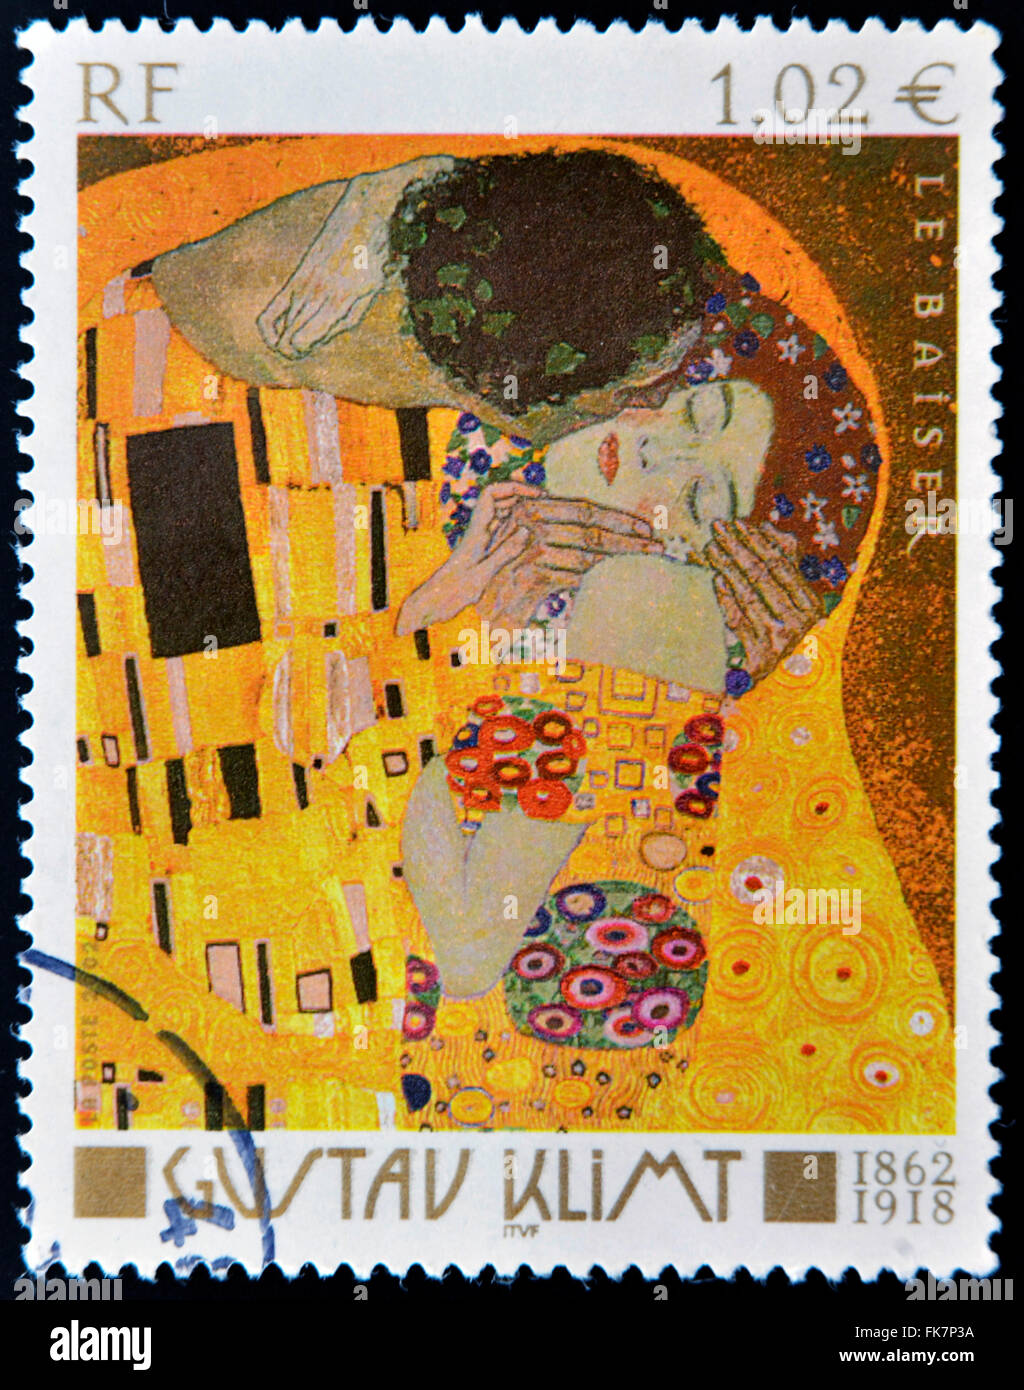 Frankreich-ca. 2002: Briefmarke gedruckt in Frankreich zeigt berühmte Bild den Kuß (Le Baiser) österreichischen symbolistischen Malers Gustav Klimt Stockfoto